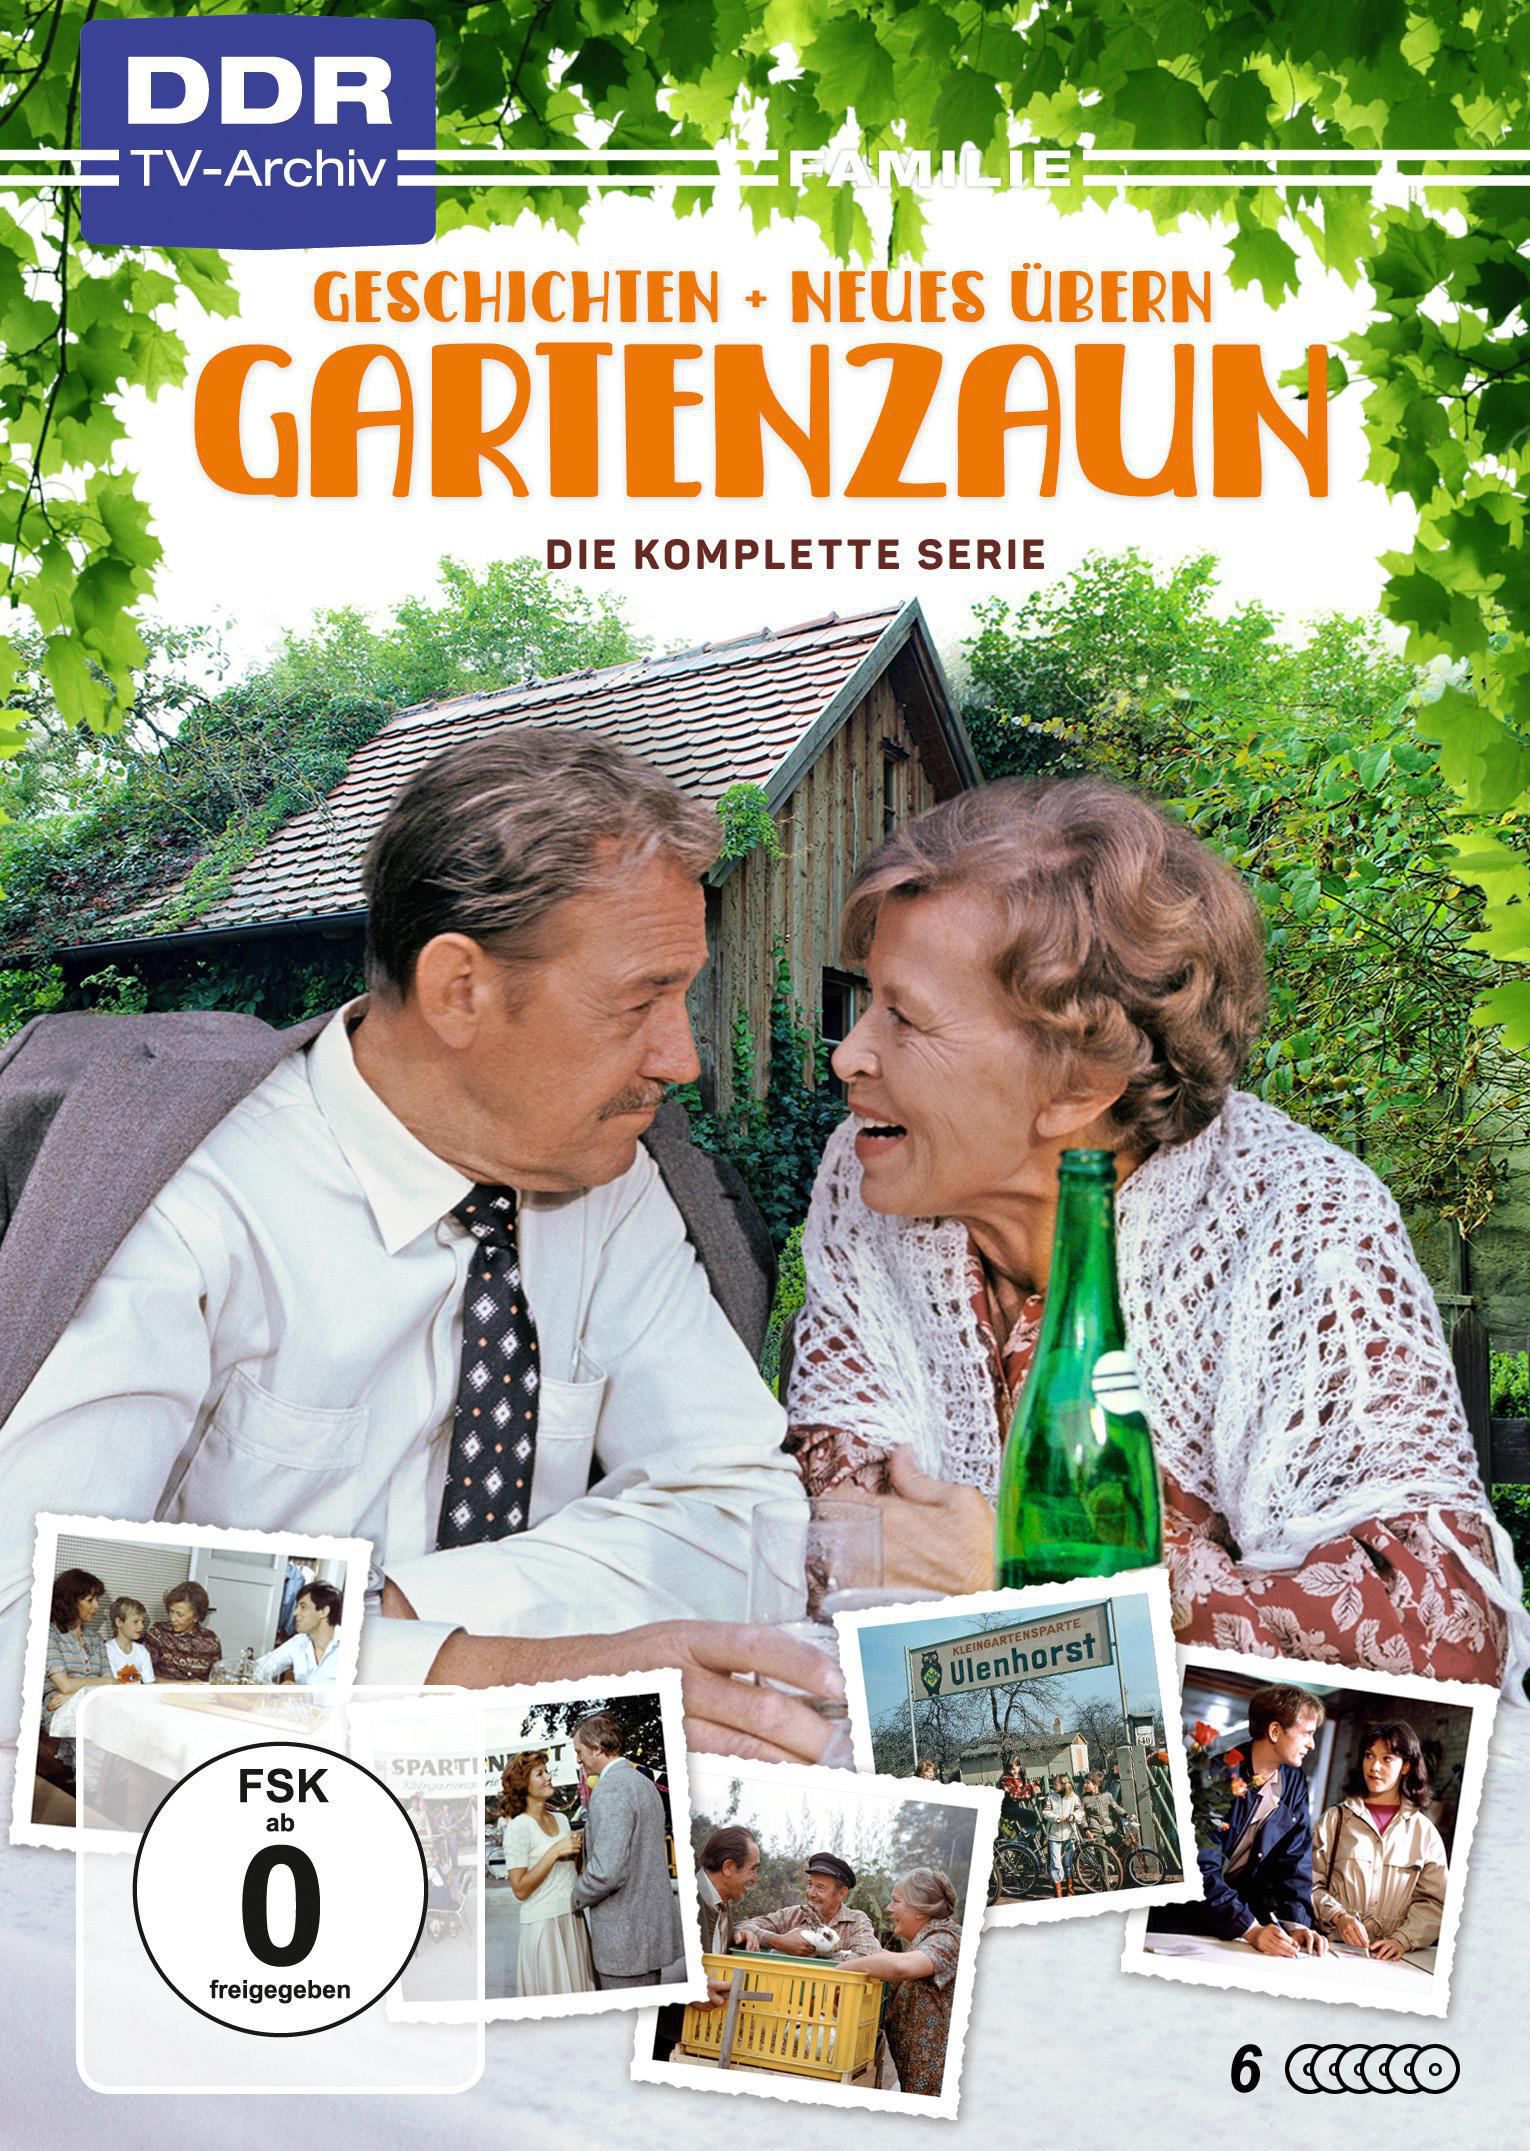 & DVD Neues übern Geschichten Gartenzaun